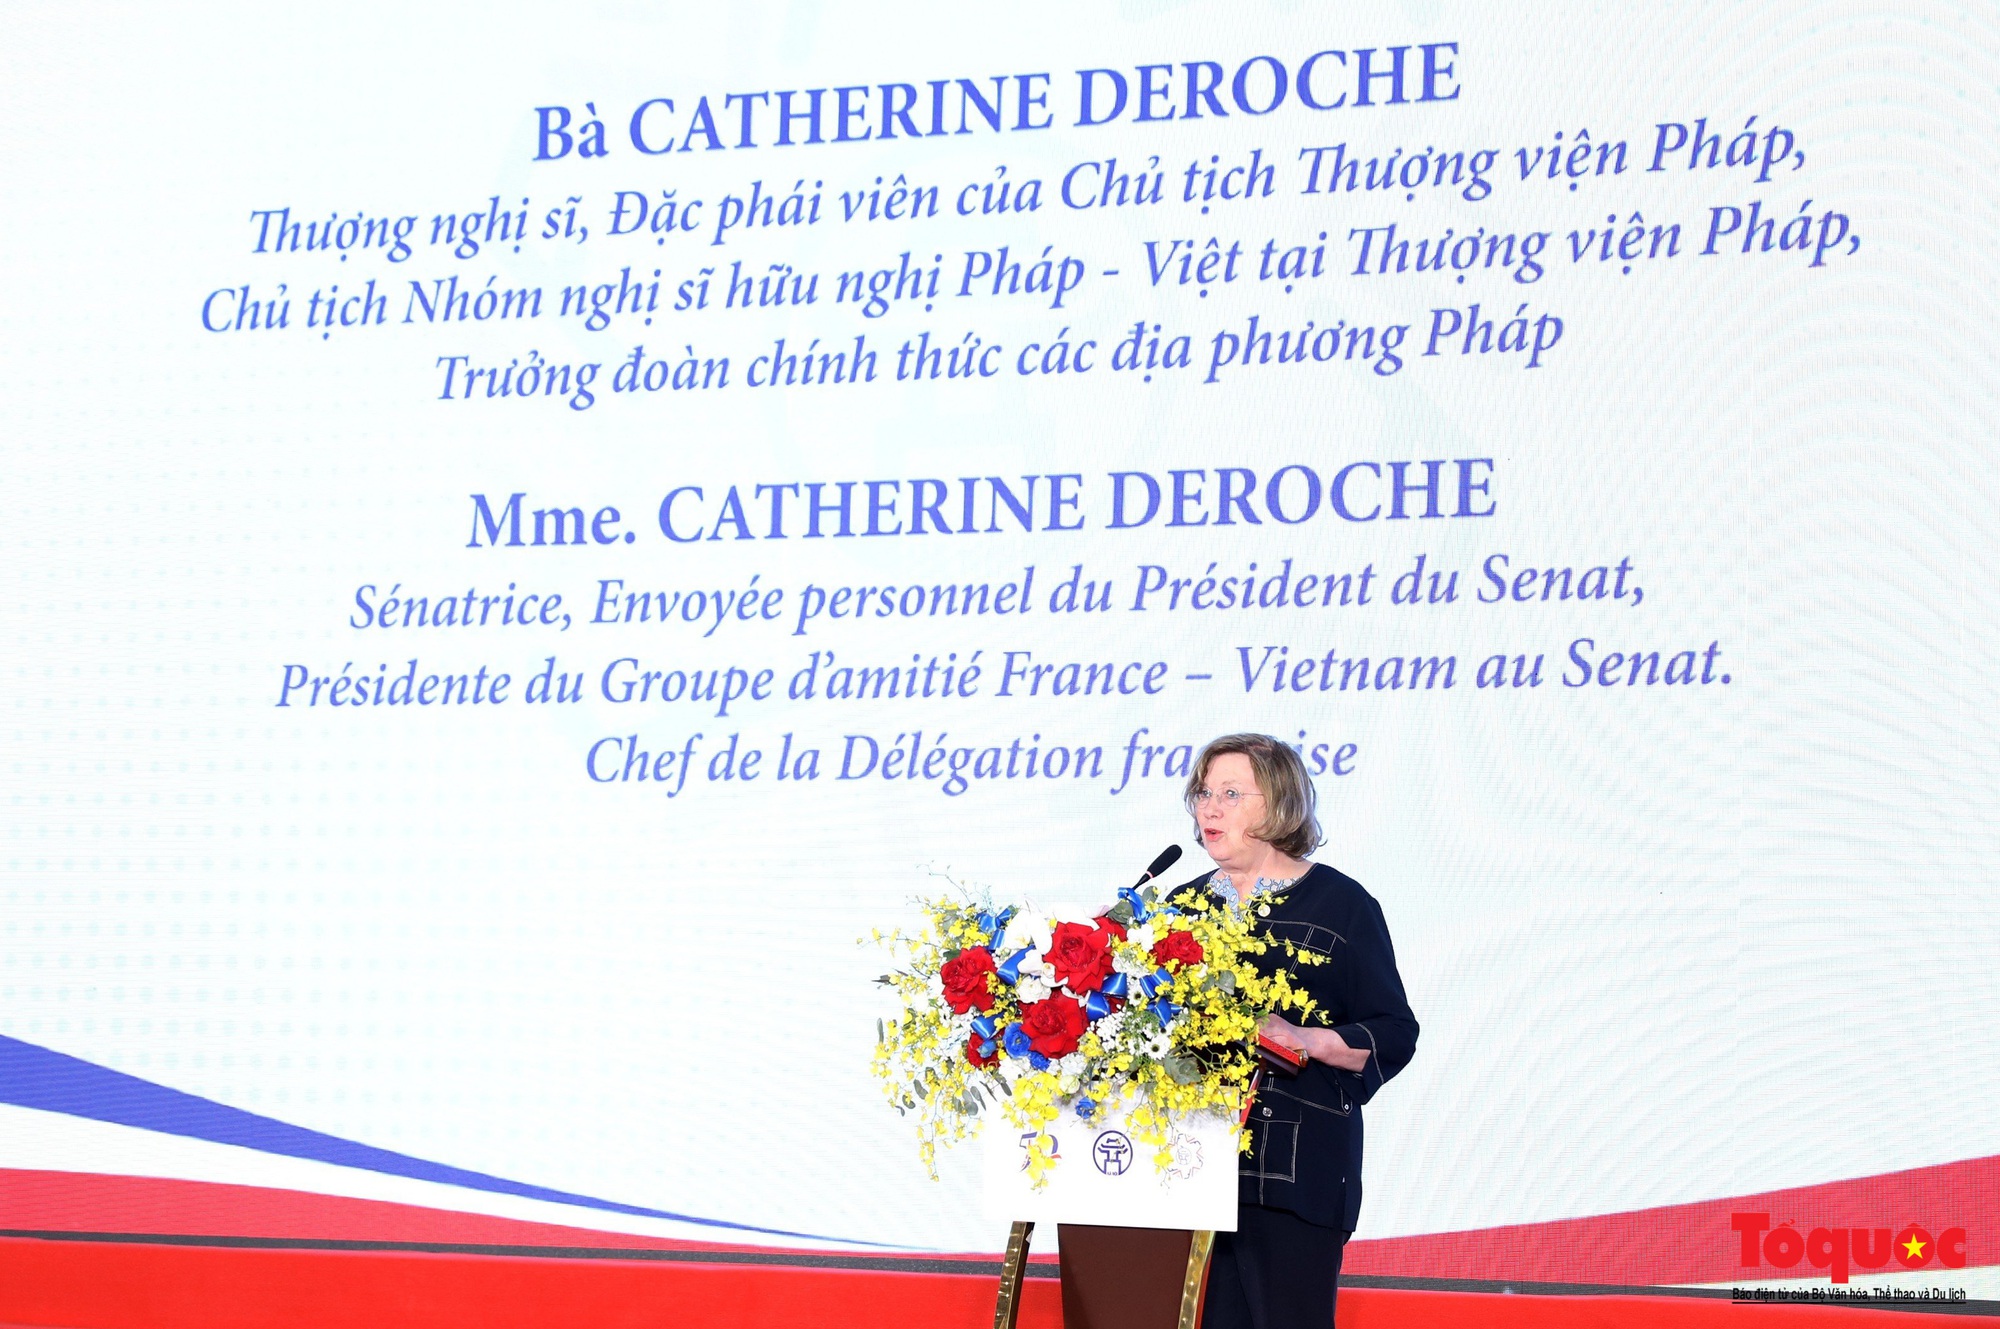 Chùm ảnh: Khai mạc Hội nghị hợp tác giữa các địa phương Việt Nam và Pháp lần thứ 12 - Ảnh 12.